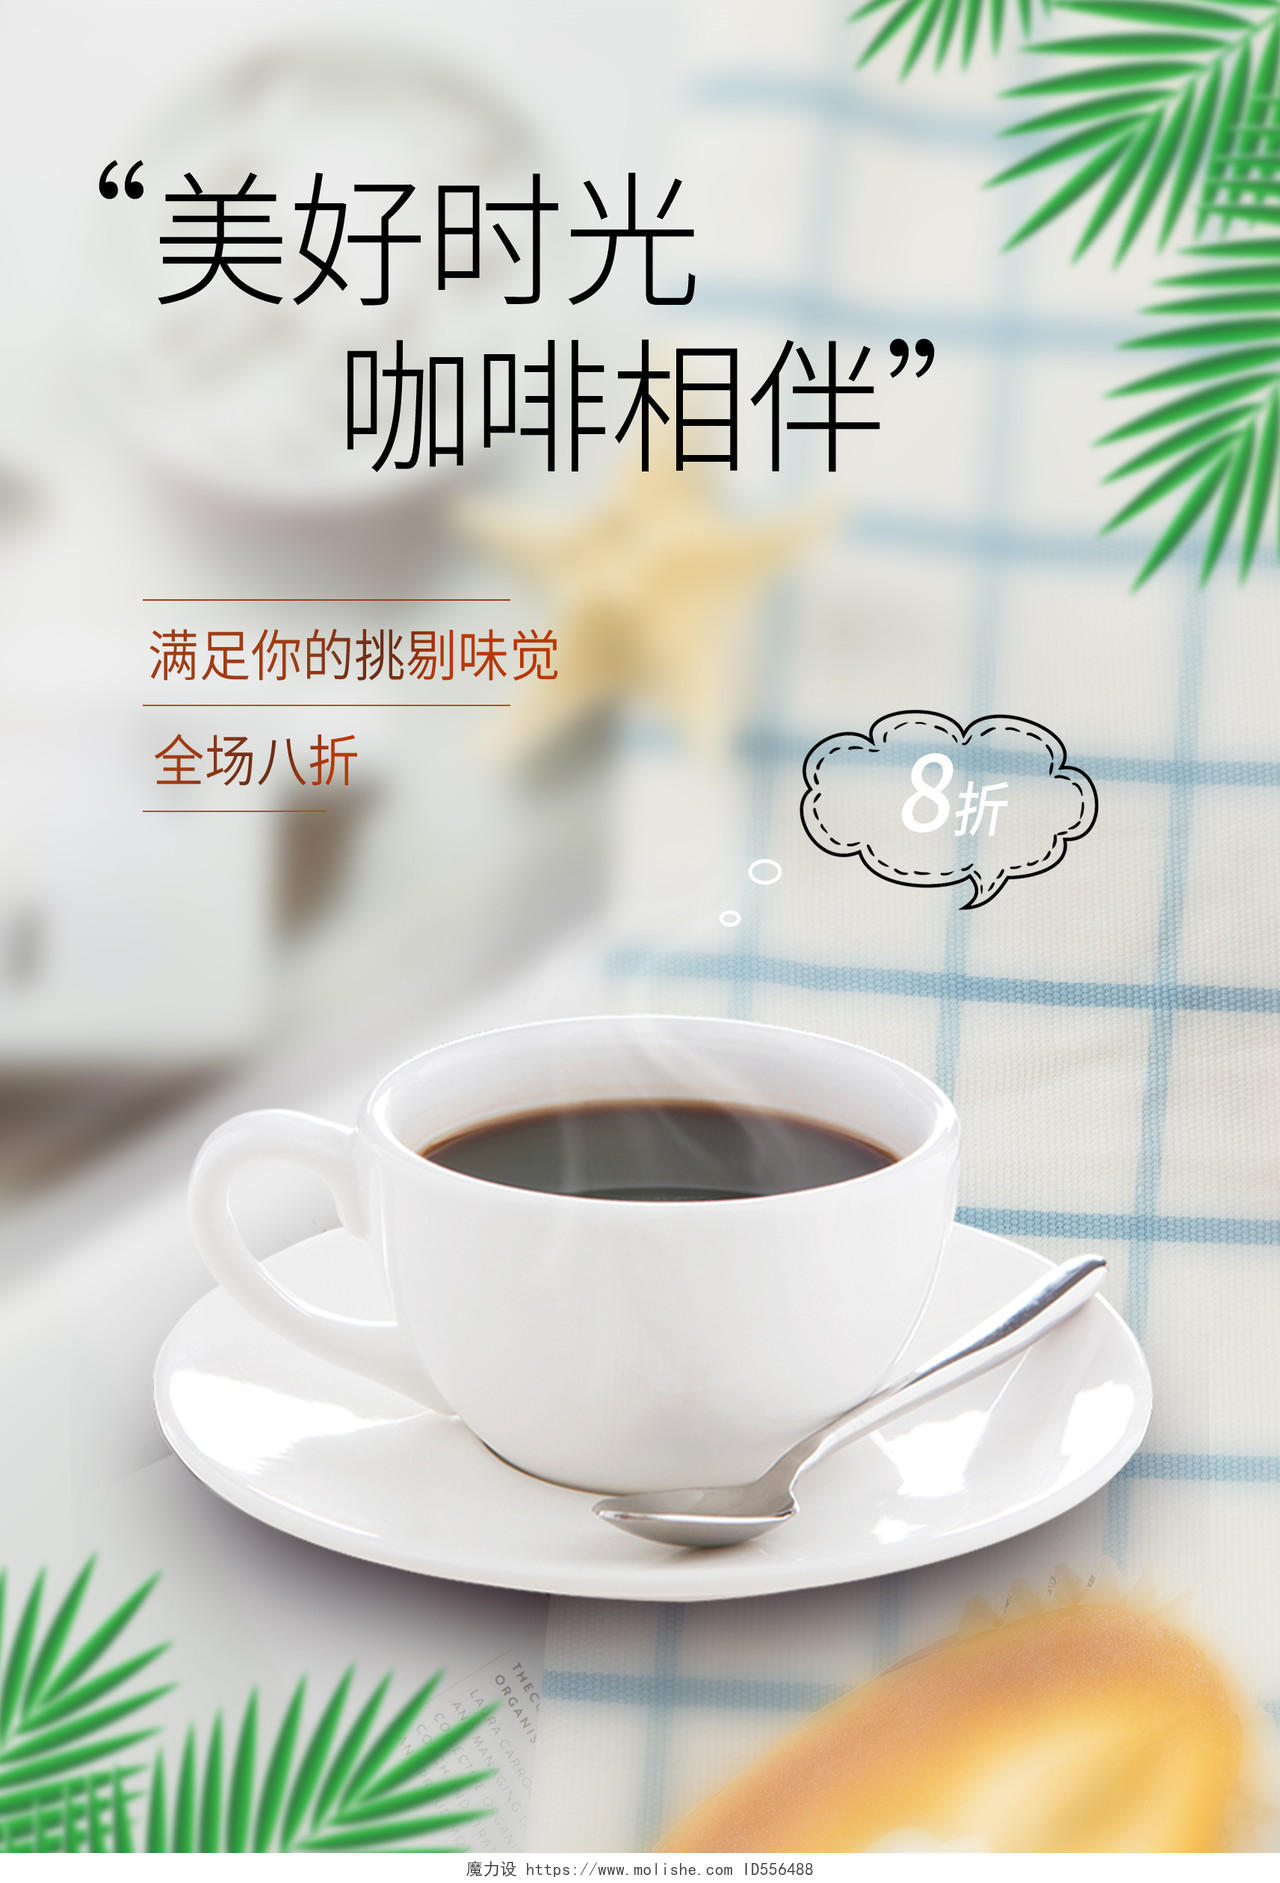 灰色清新咖啡好时光下午茶活动价格海报咖啡海报